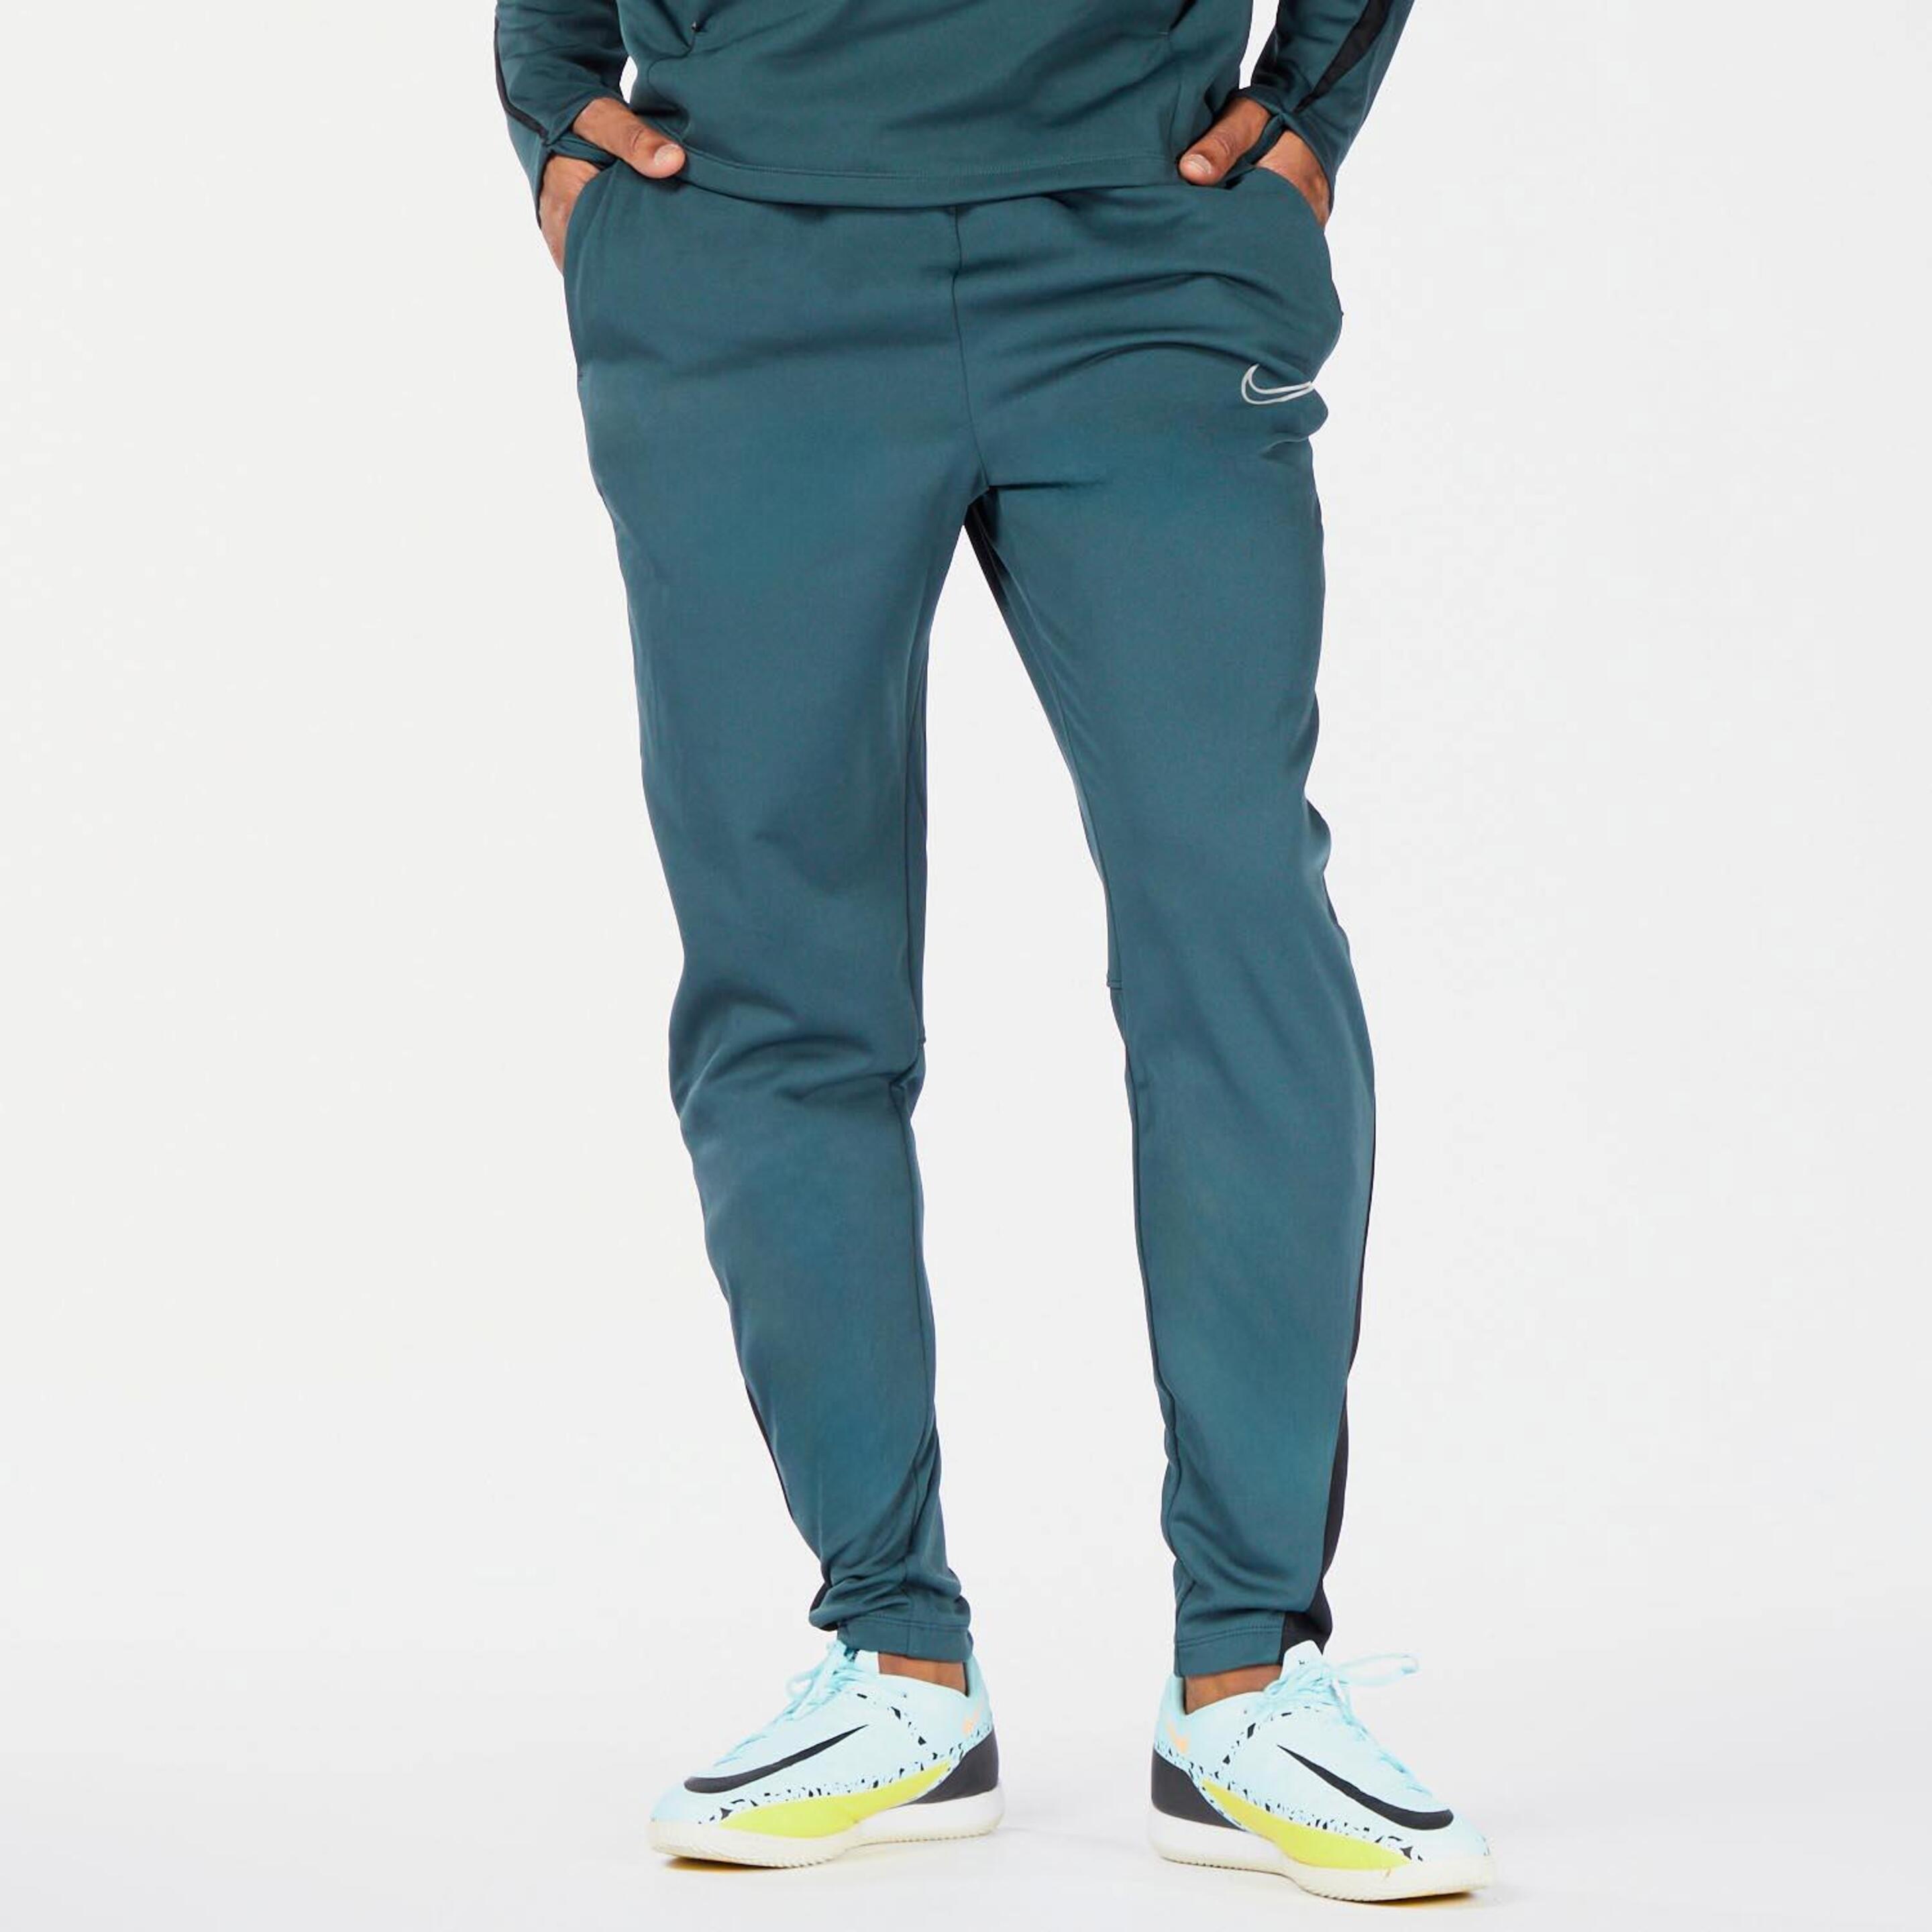 Nike Winter Warrior - verde - Pantalón Fútbol Hombre